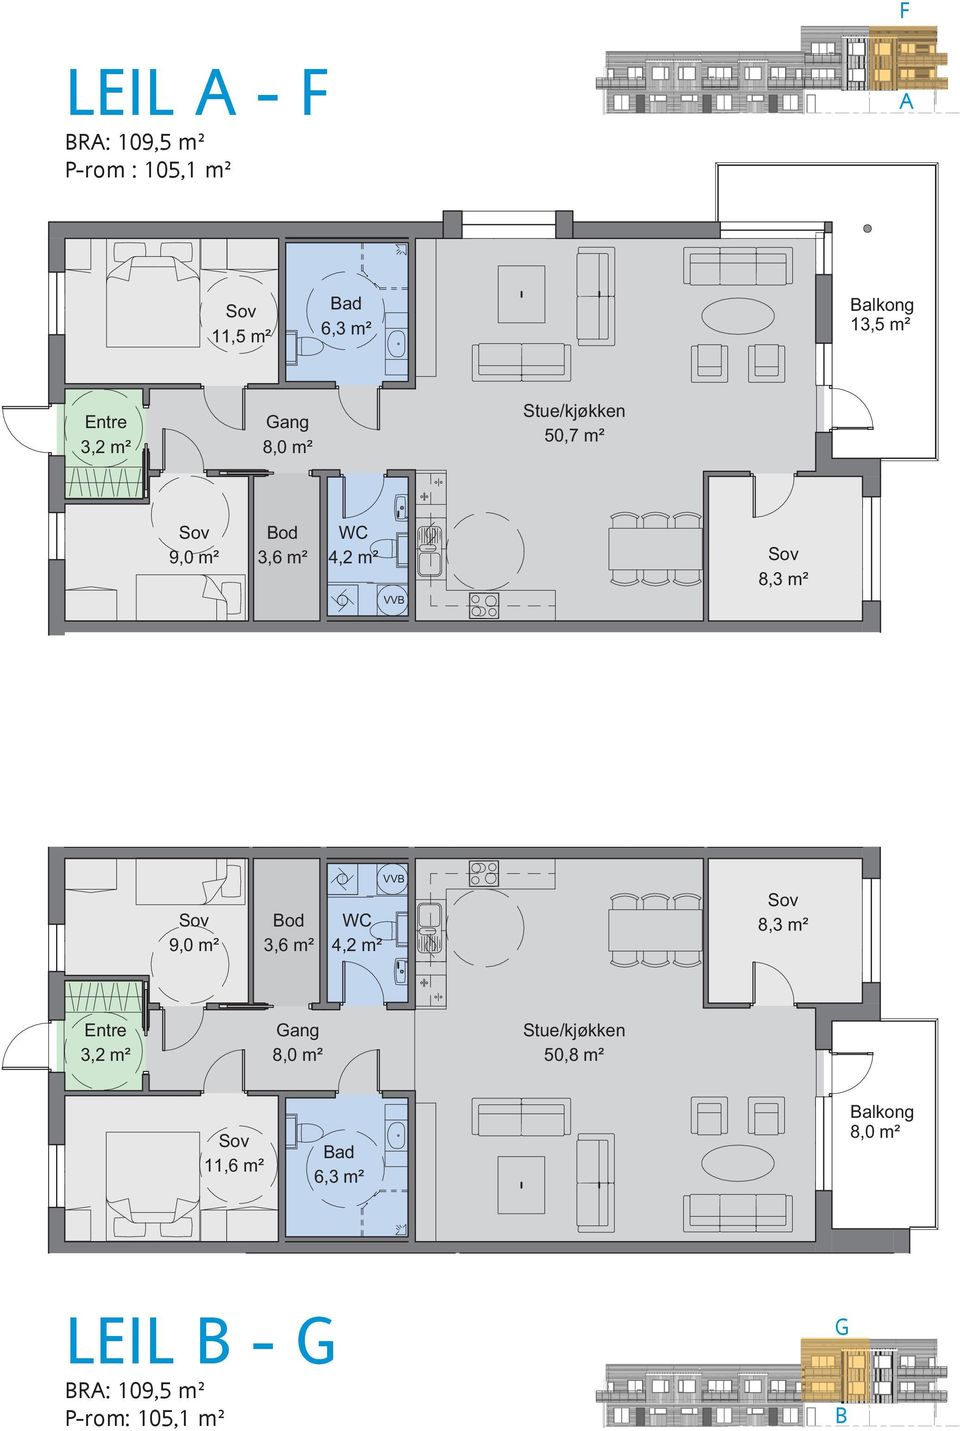 m² 9,0 m² Bod 3,6 m² T WC 4,2 m² 8,3 m² Entre 3,2 m² Gang 8,0 m² Stue/kjøkken